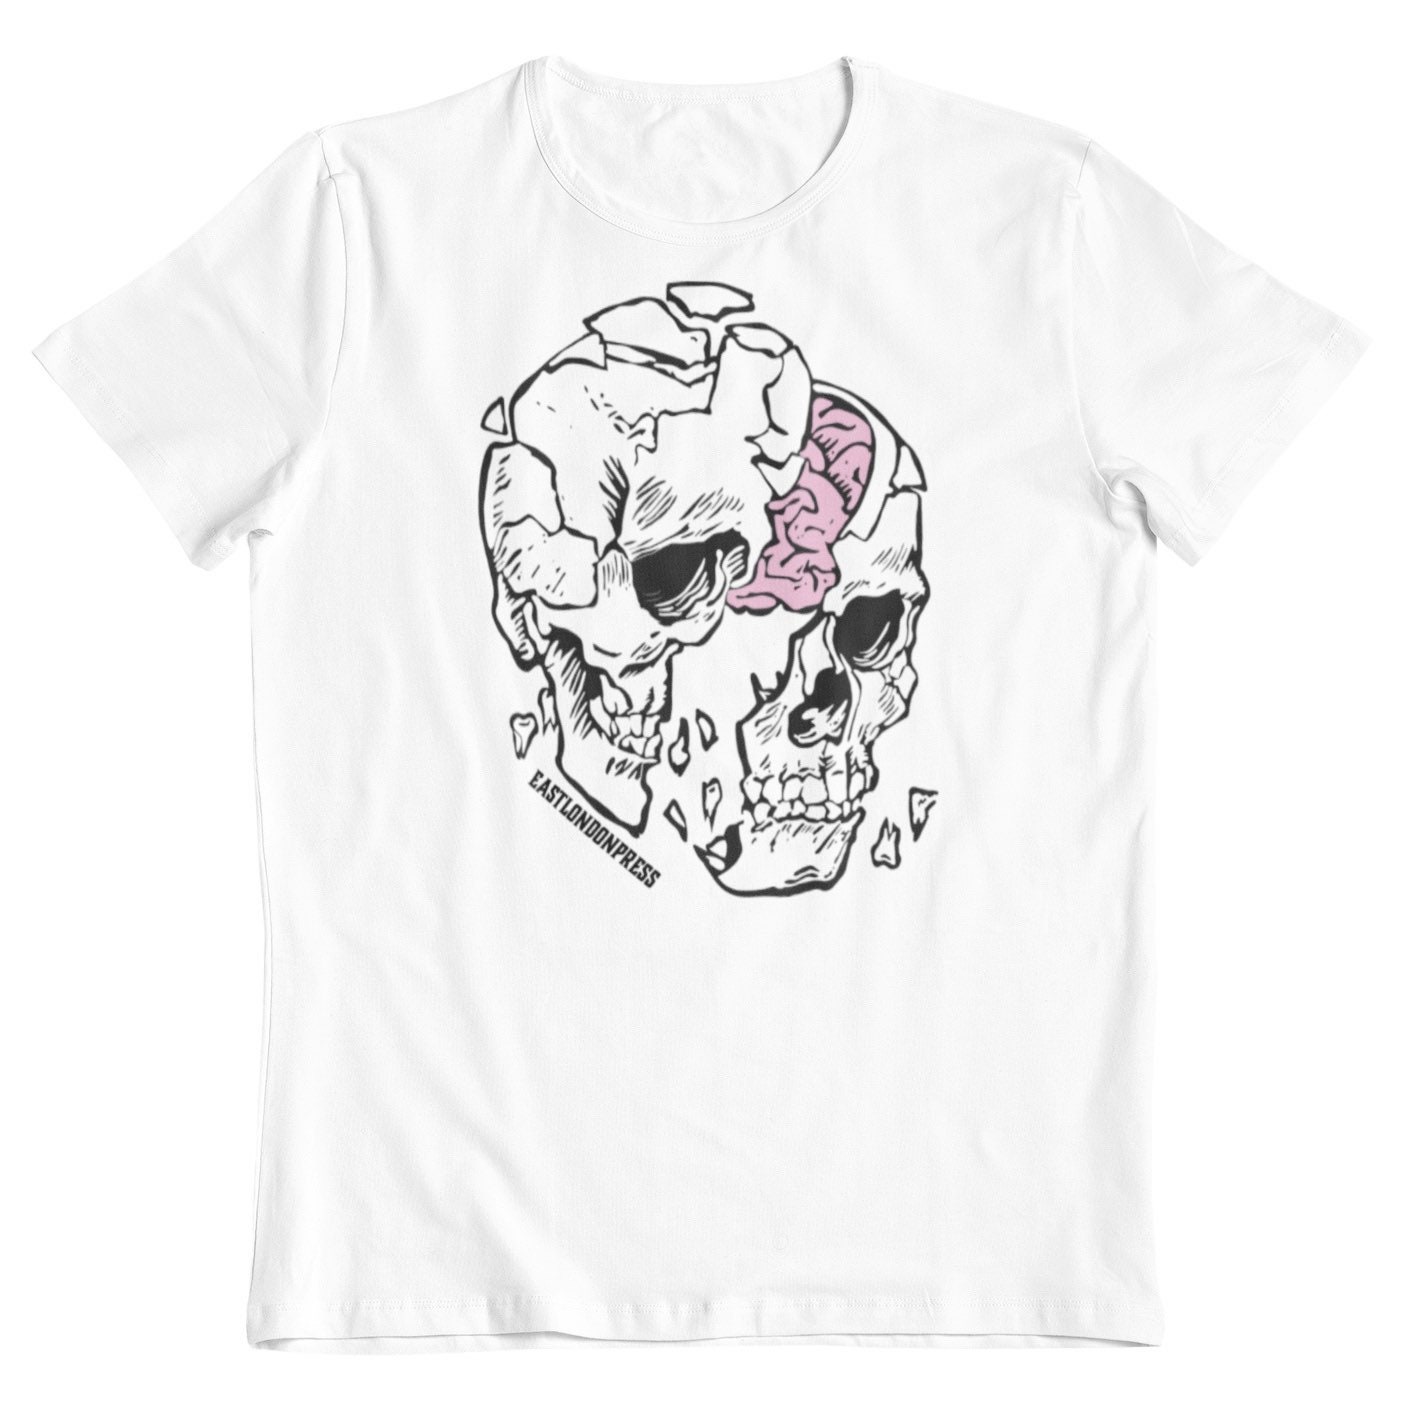 Headache T-shirt crush skull brain gift him her cool | Etsy